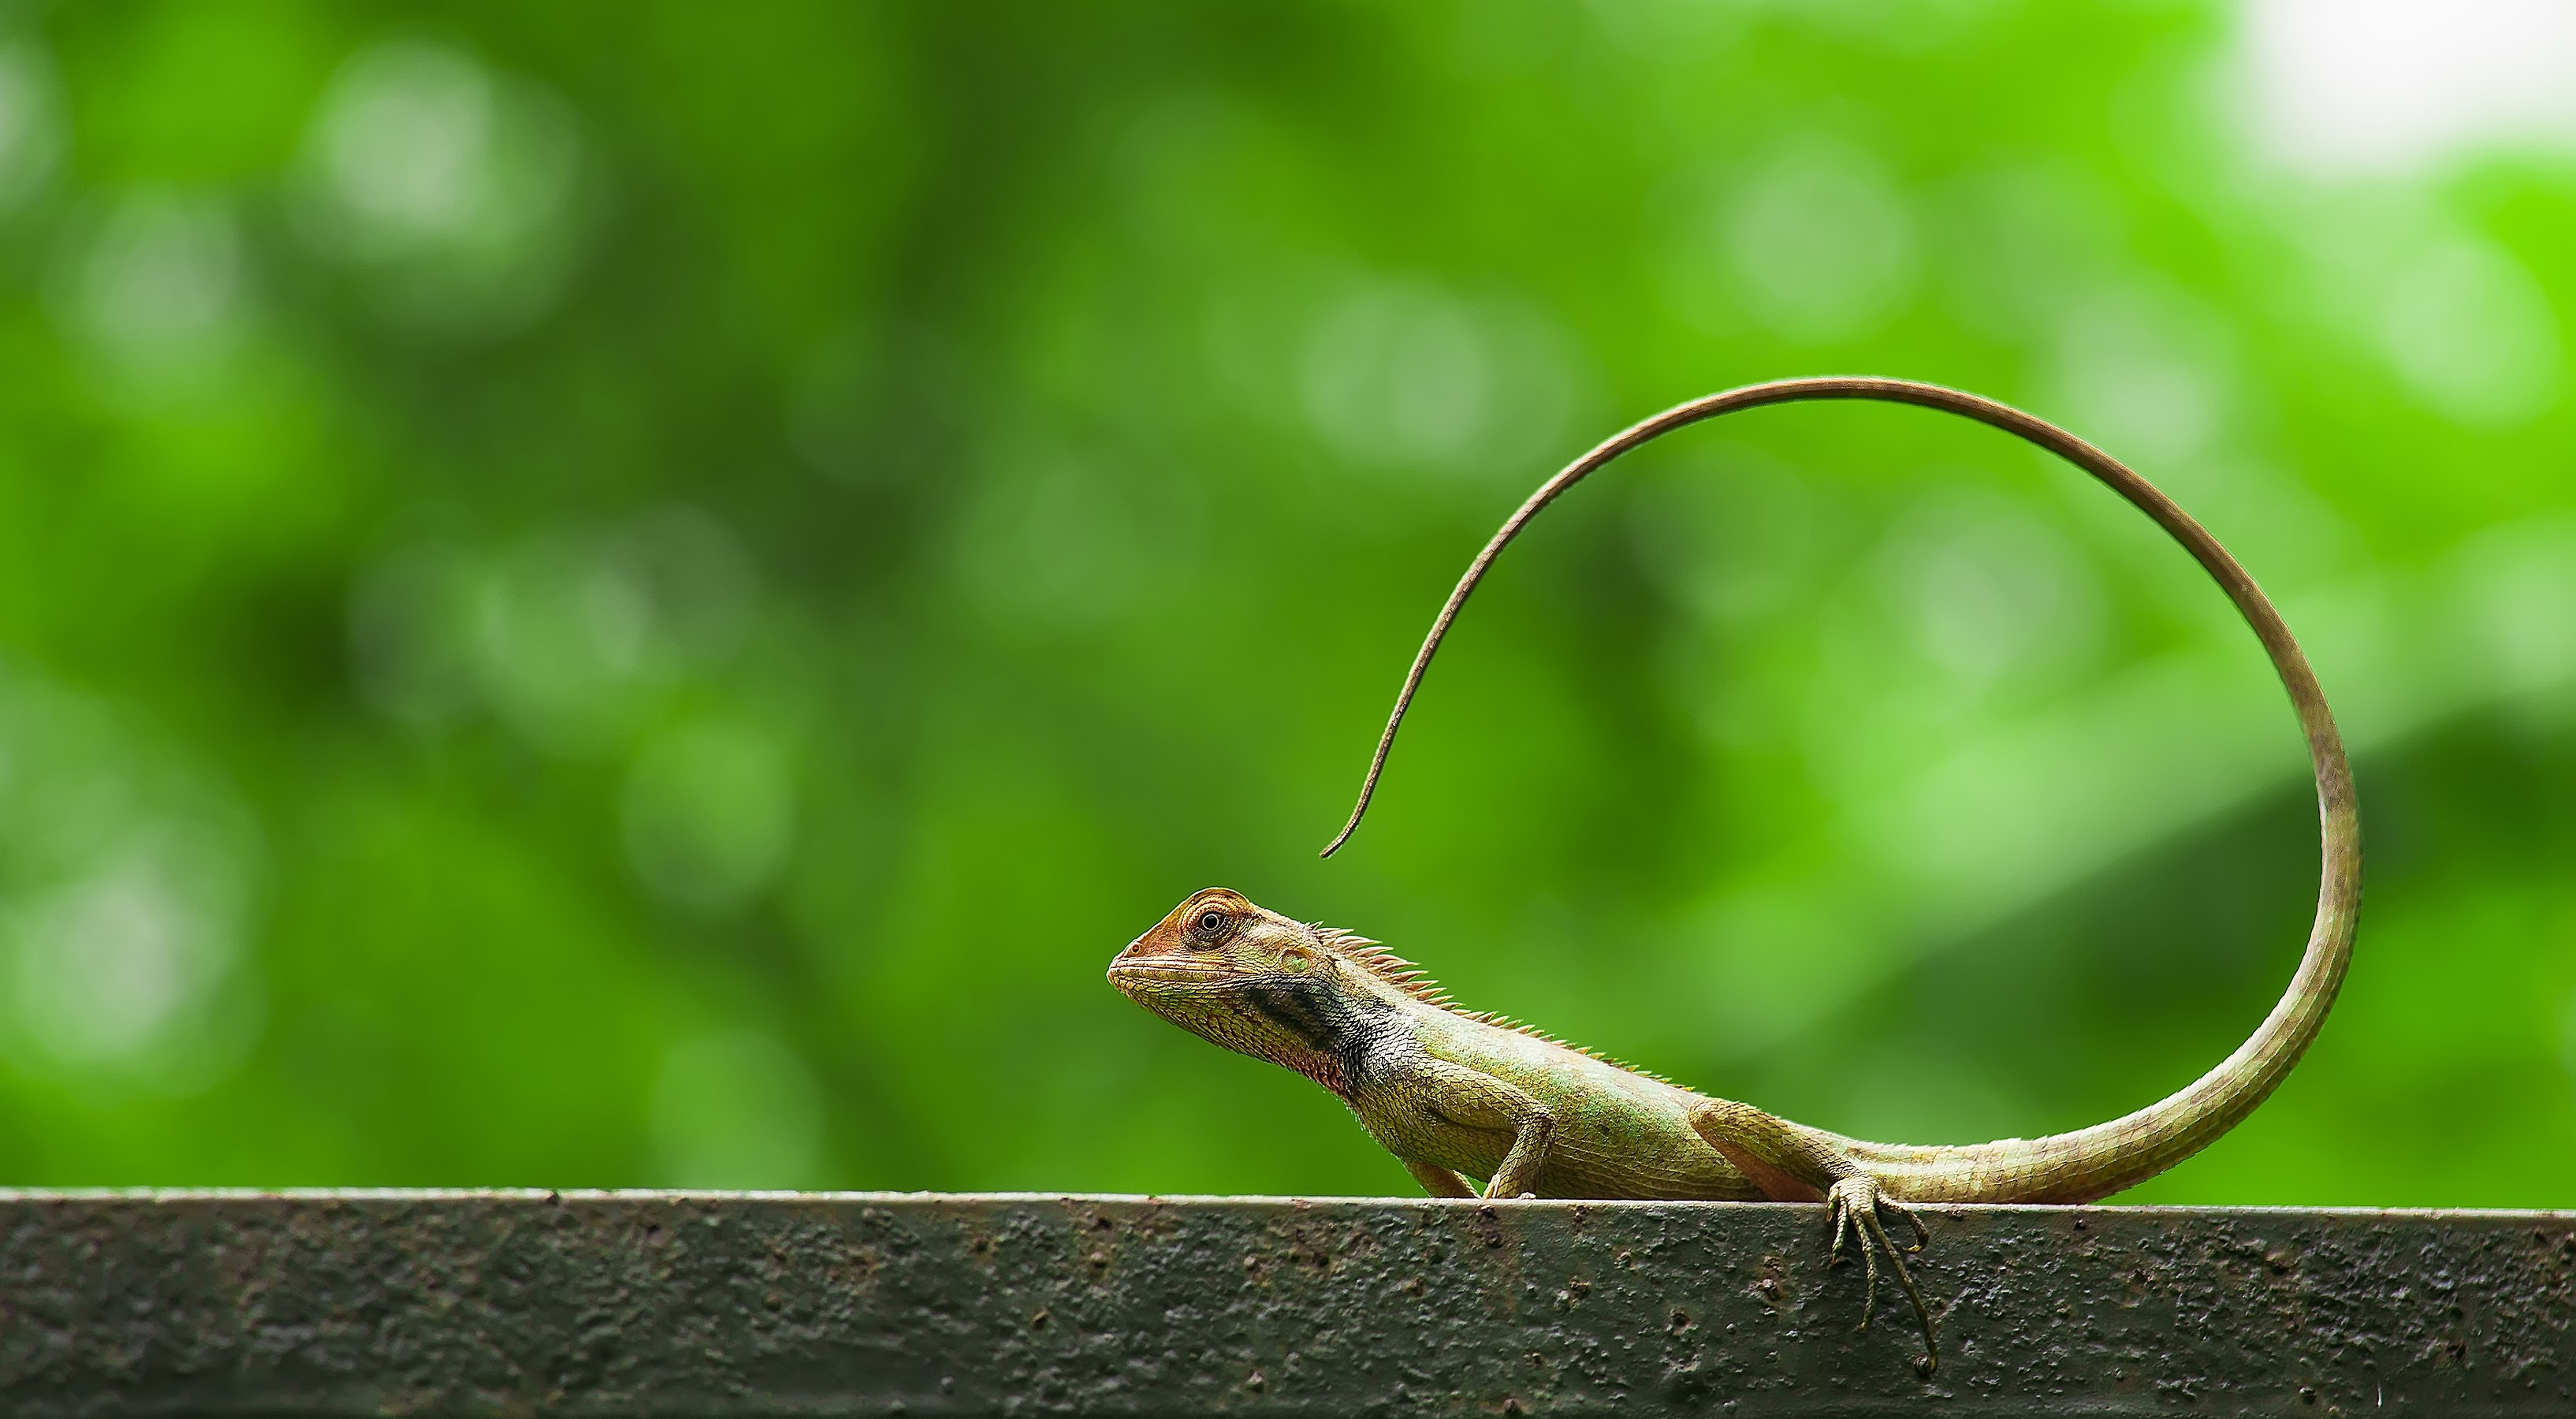 Oriental garden lizard at National Botanical Garden of Bangladesh. Photograph: Azim Khan Ronnie